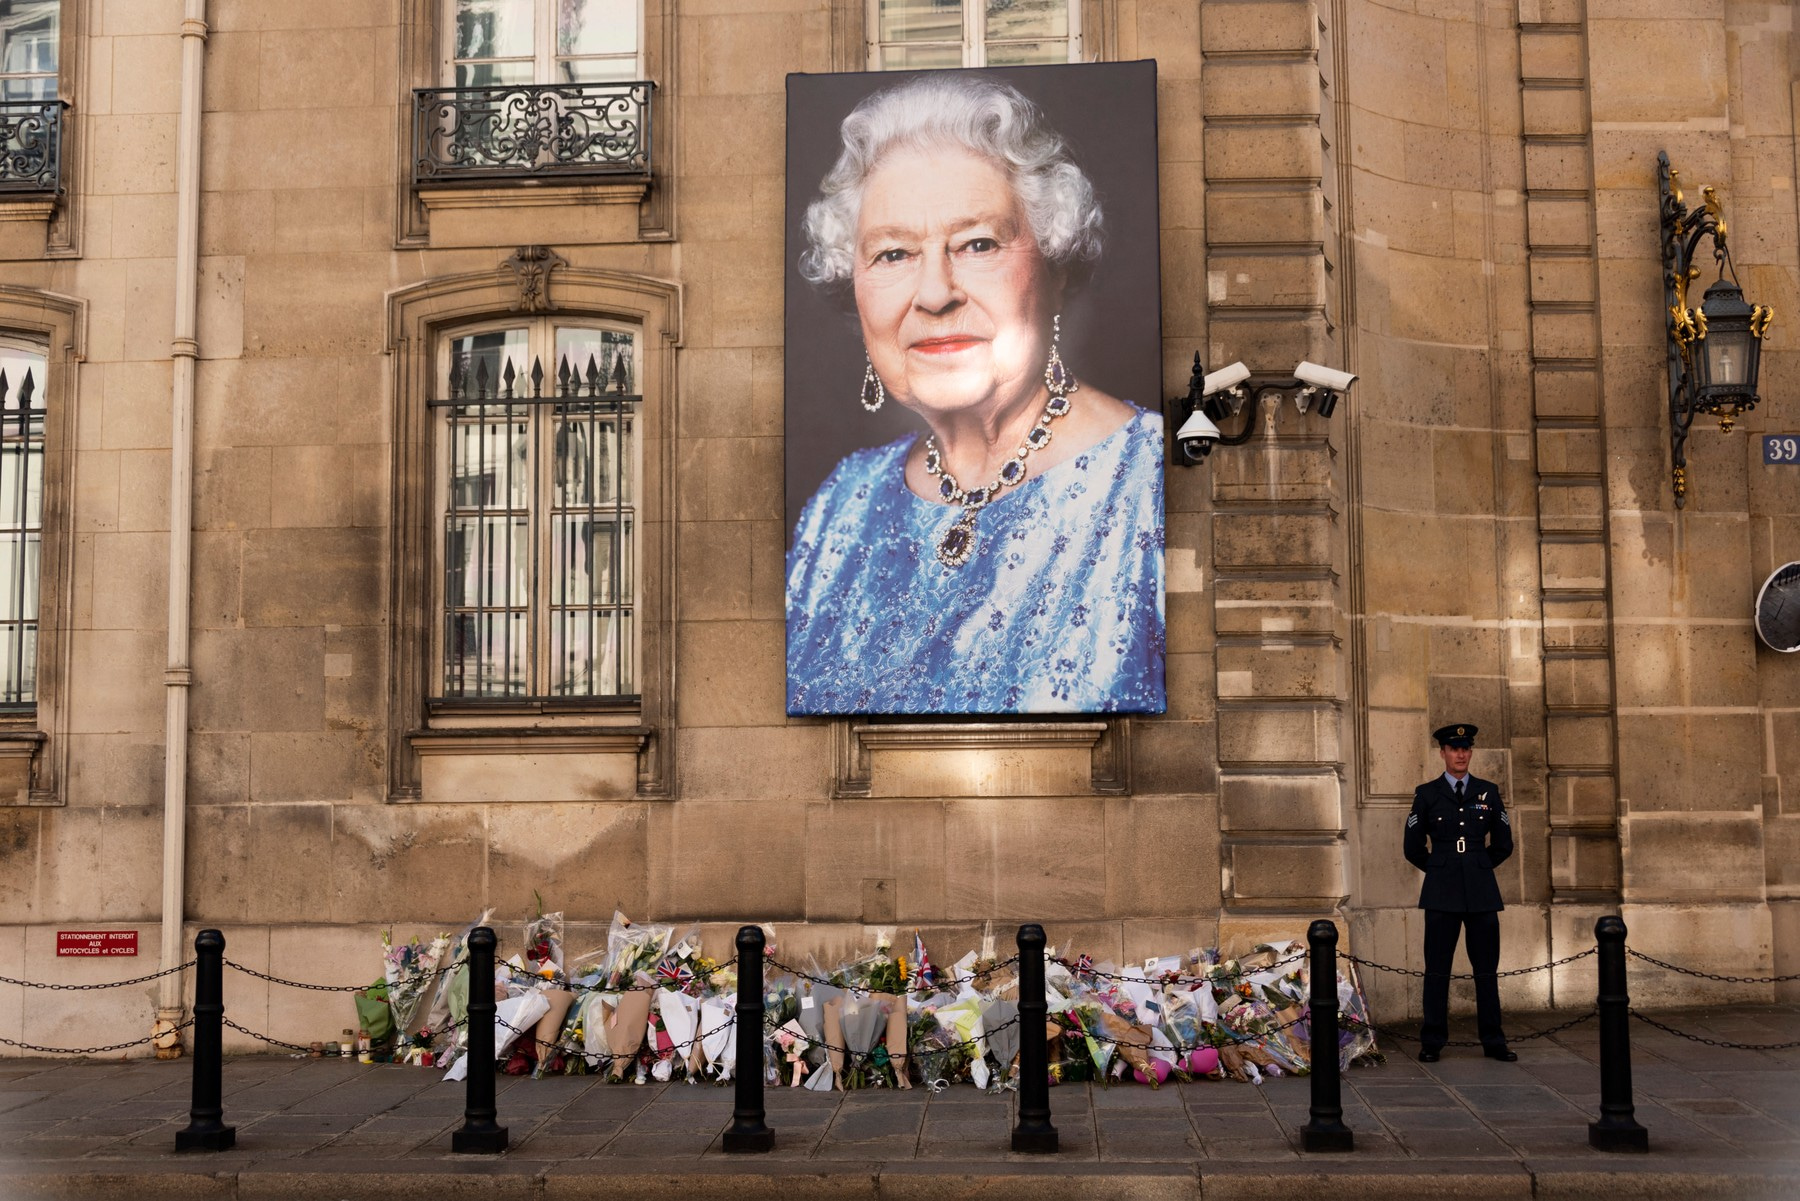 Portrét královny Alžběty II. na zdi britského velvyslanectví v Paříži několik dní po její smrti. Královna zemřela 8. září 2022.